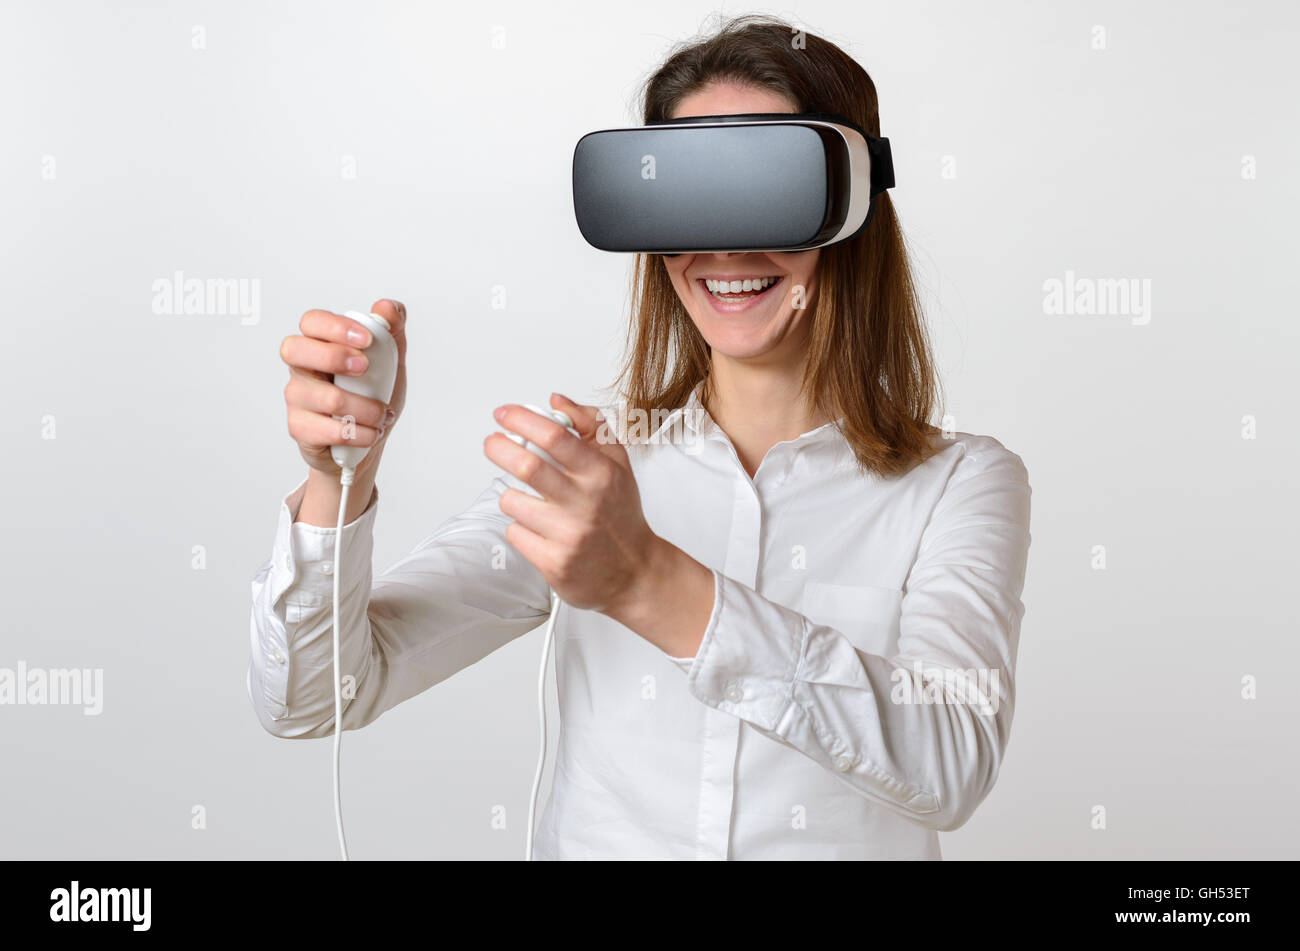 Jeune femme rire unique dans les cheveux foncés et portait une chemise blanche grande réalité virtuelle 3D de l'appareil de visualisation sur le visage et controlli Banque D'Images